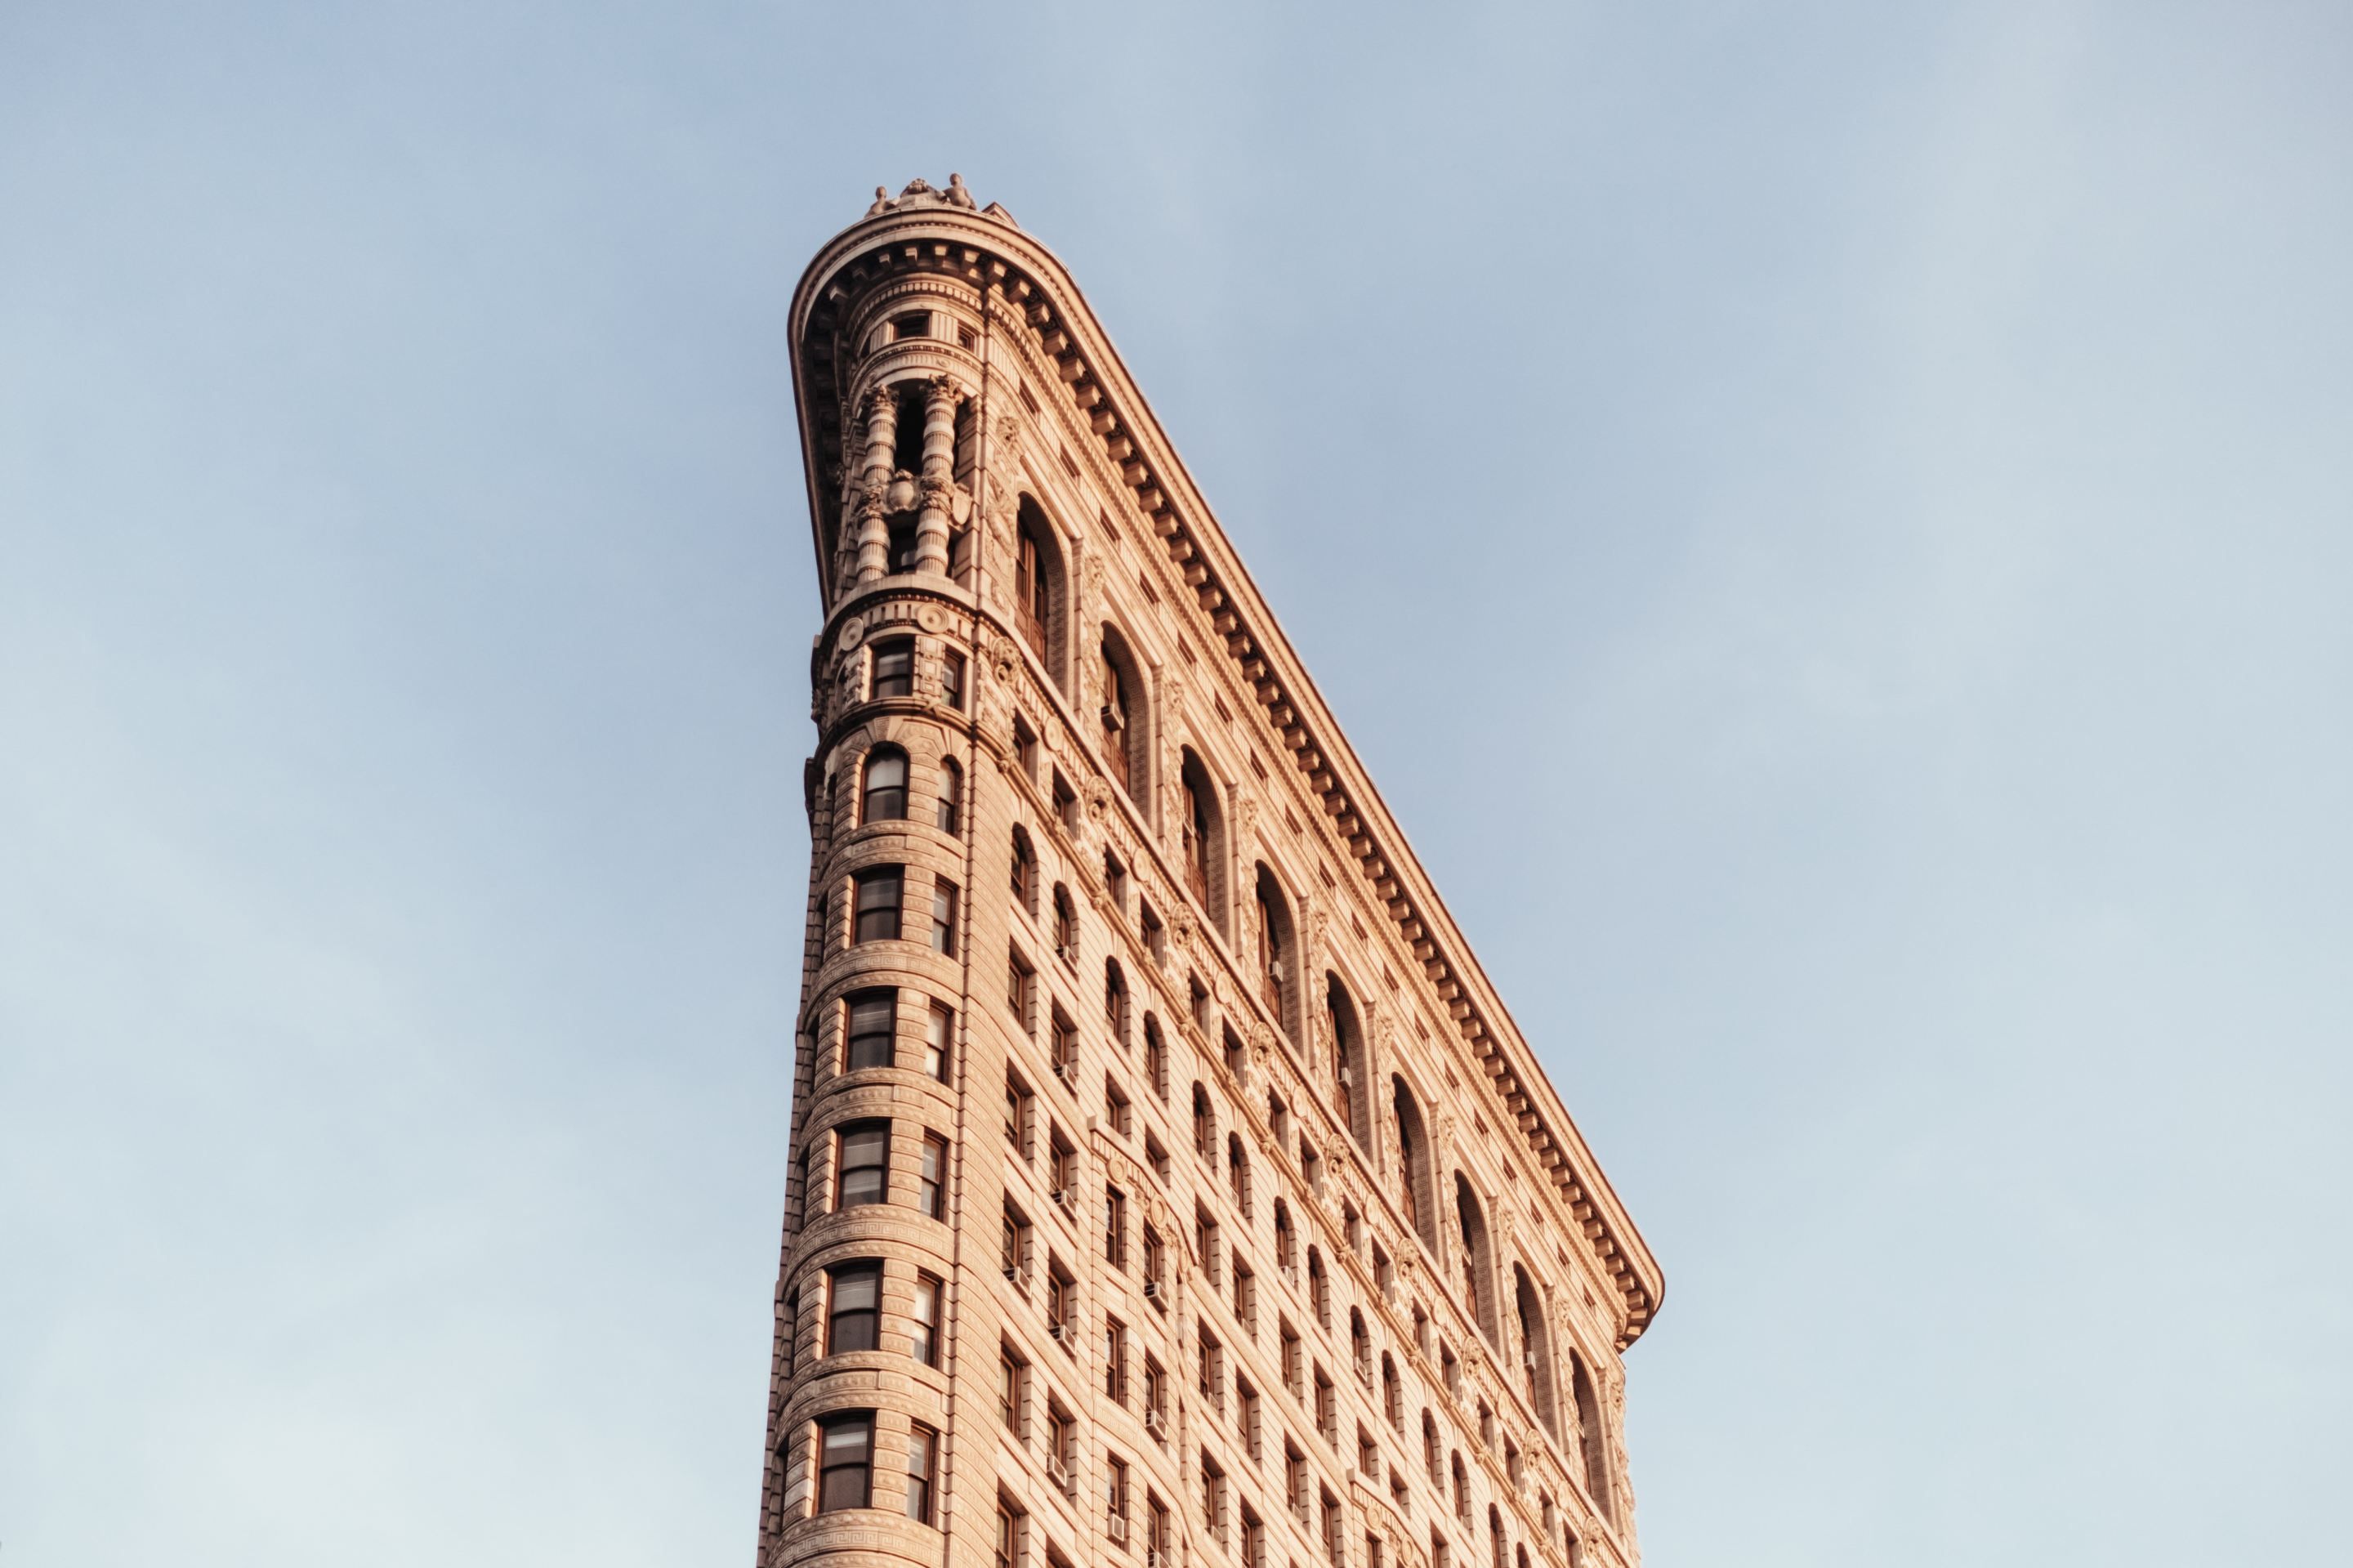 The Flatiron Building in Manhattan.